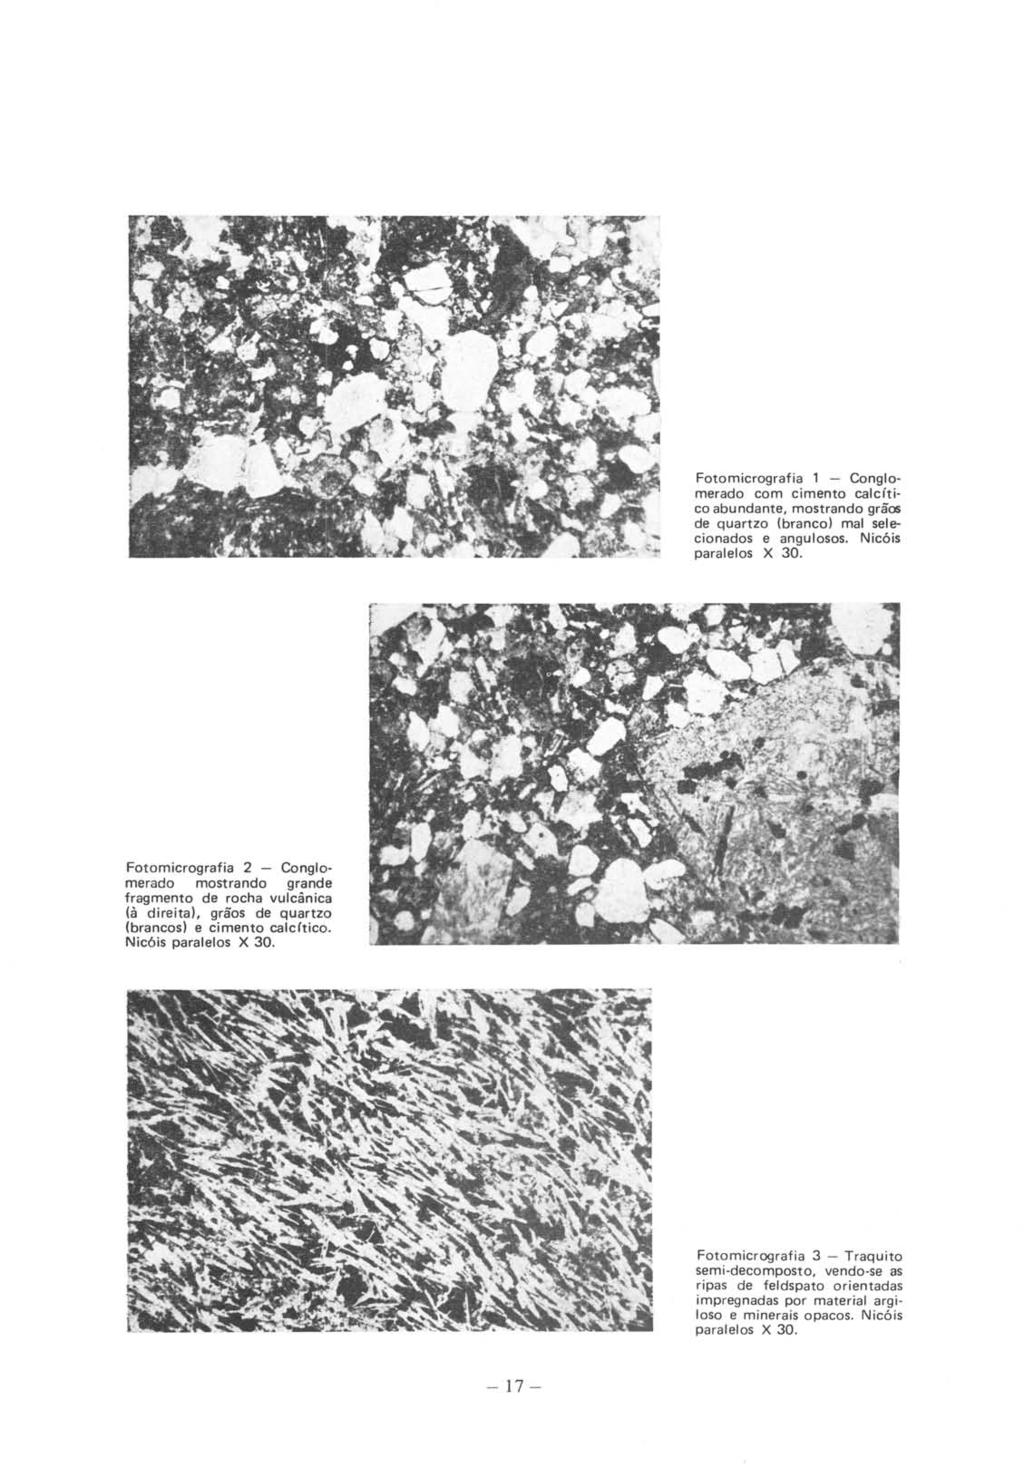 Fotomicrografia 1 - Conglomerado com cimento cal cít i co abundante, mostrando grãos de quartzo (branco) mal selecionados e angulosos. Nicóis paralelos X 30.